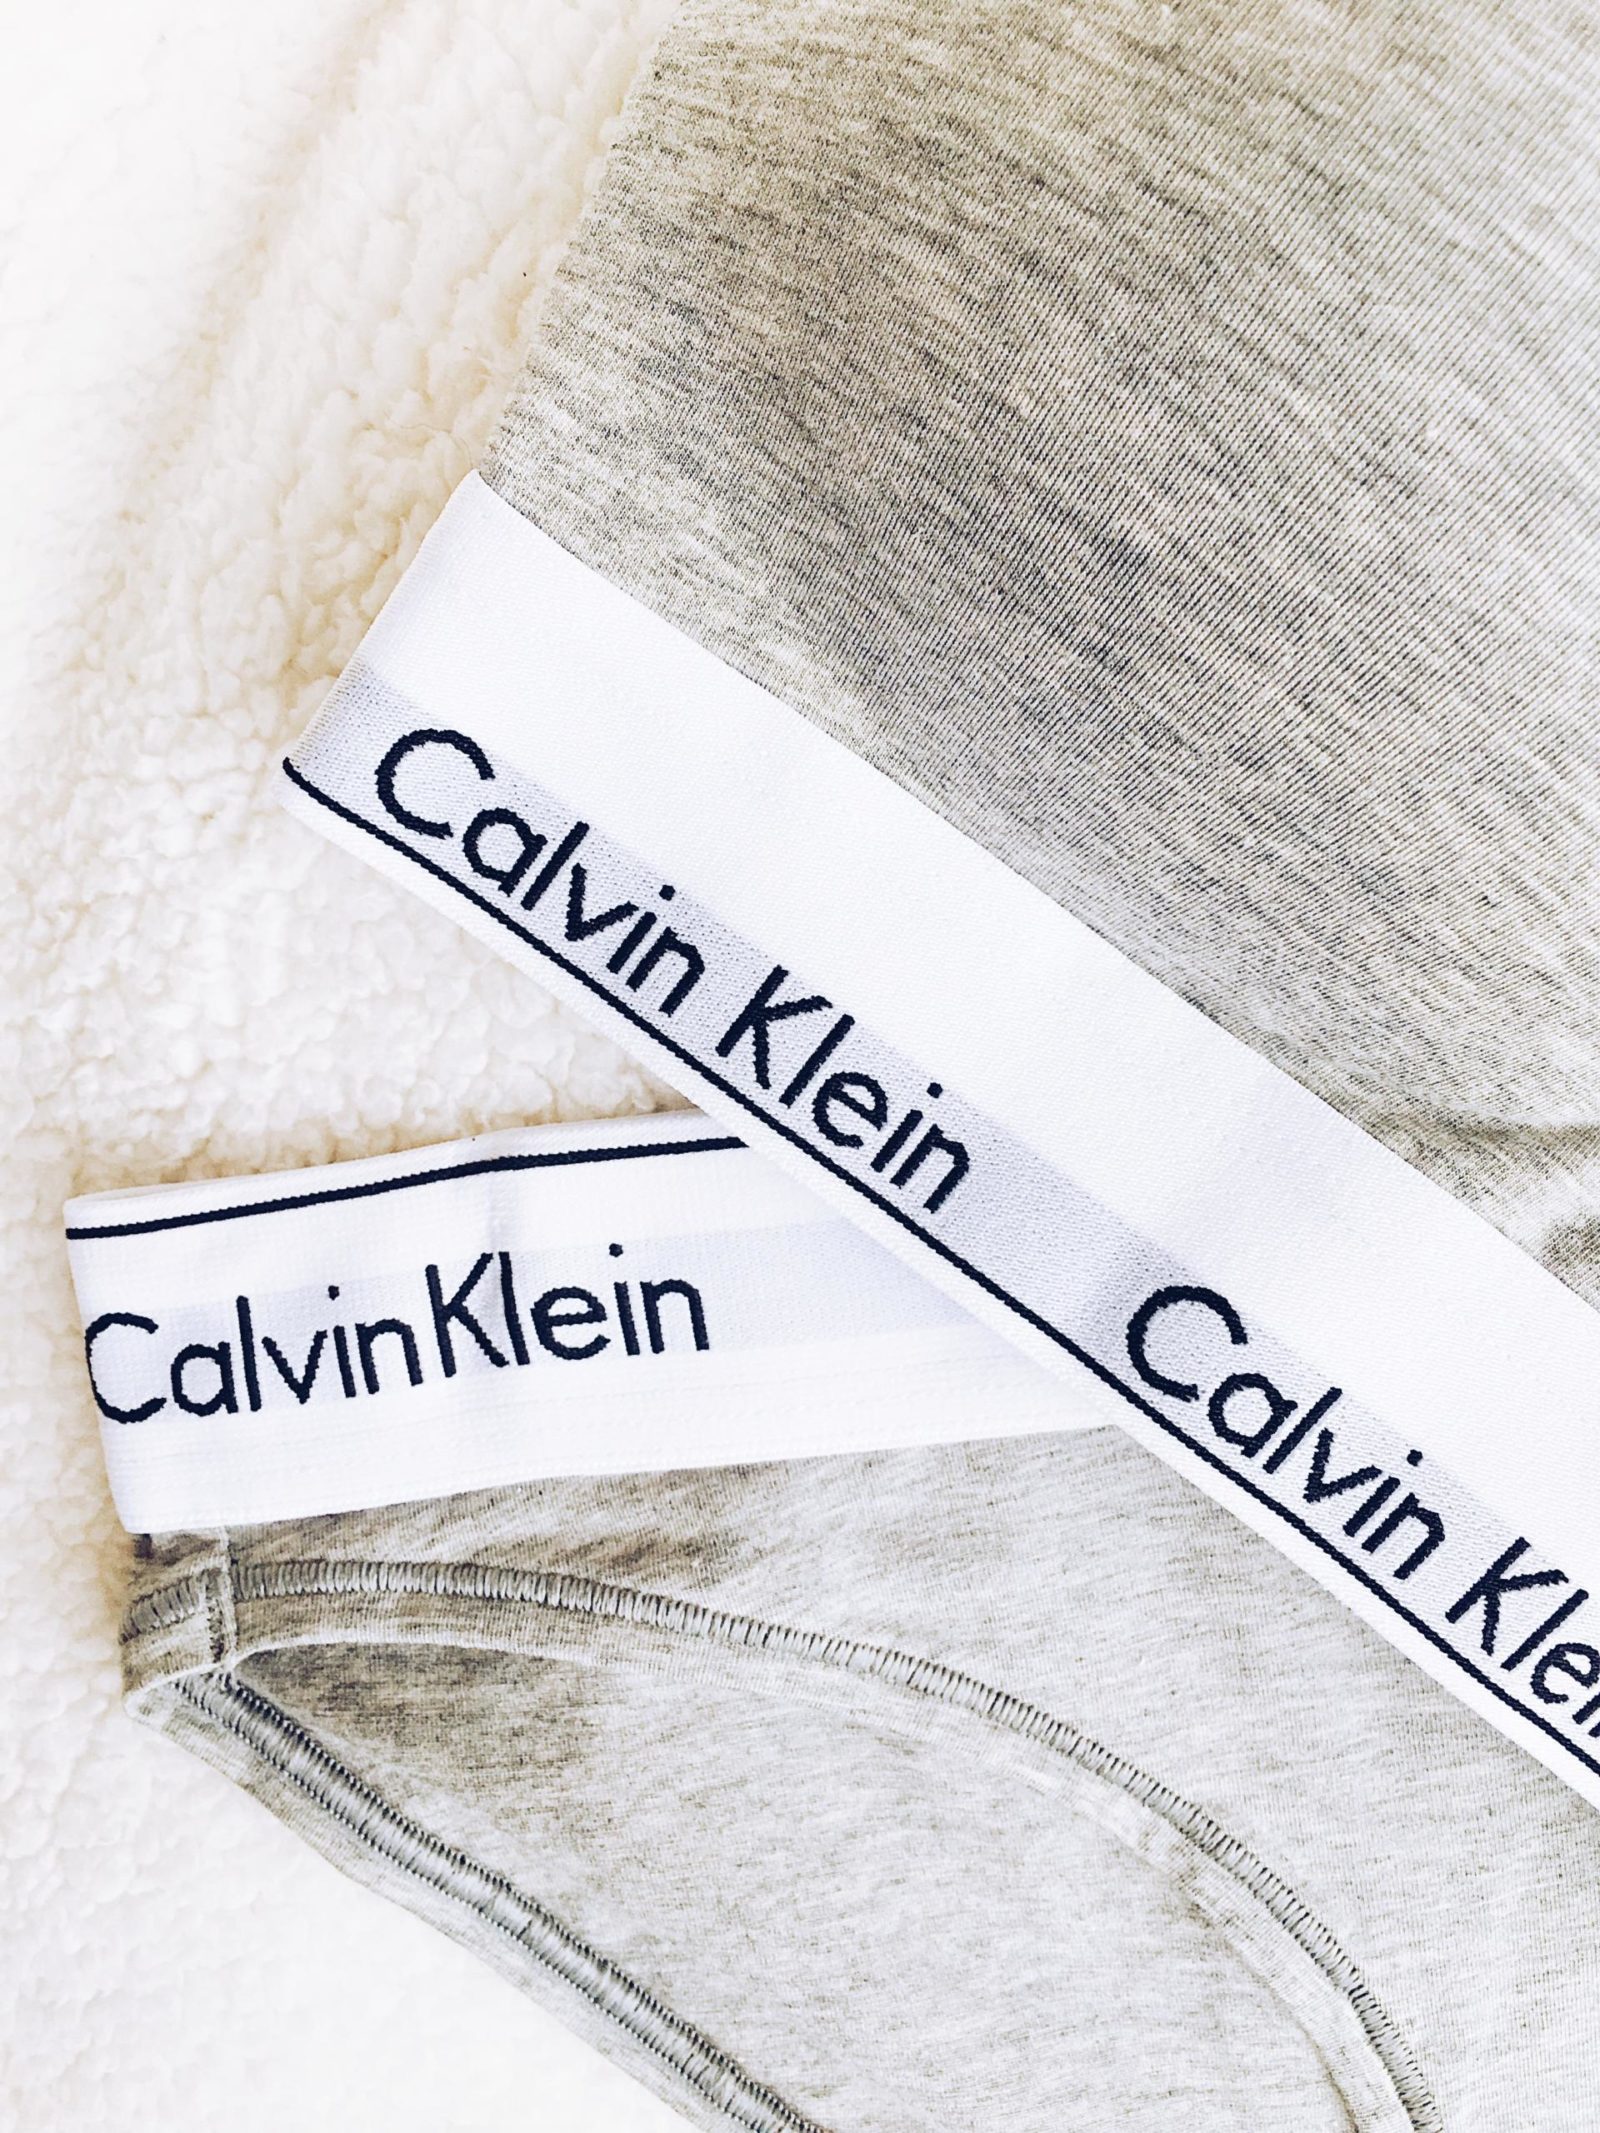 My Calvins by Calvin Klein easy chill wear